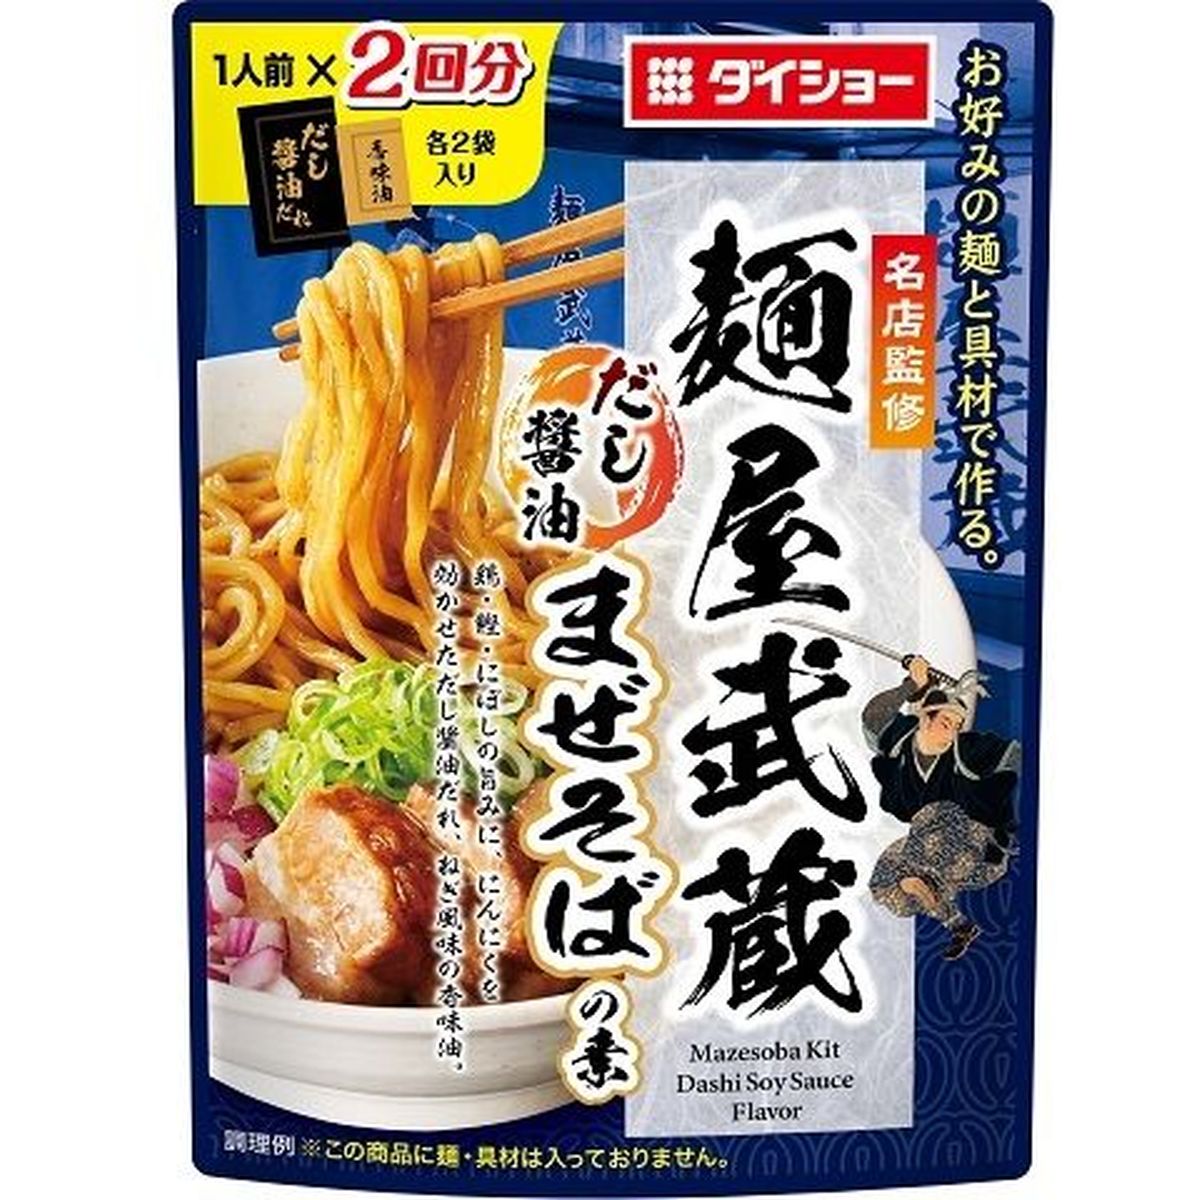 【10個入リ】ダイショー 名店麺屋武蔵ダシ醤油マゼソバ 126g